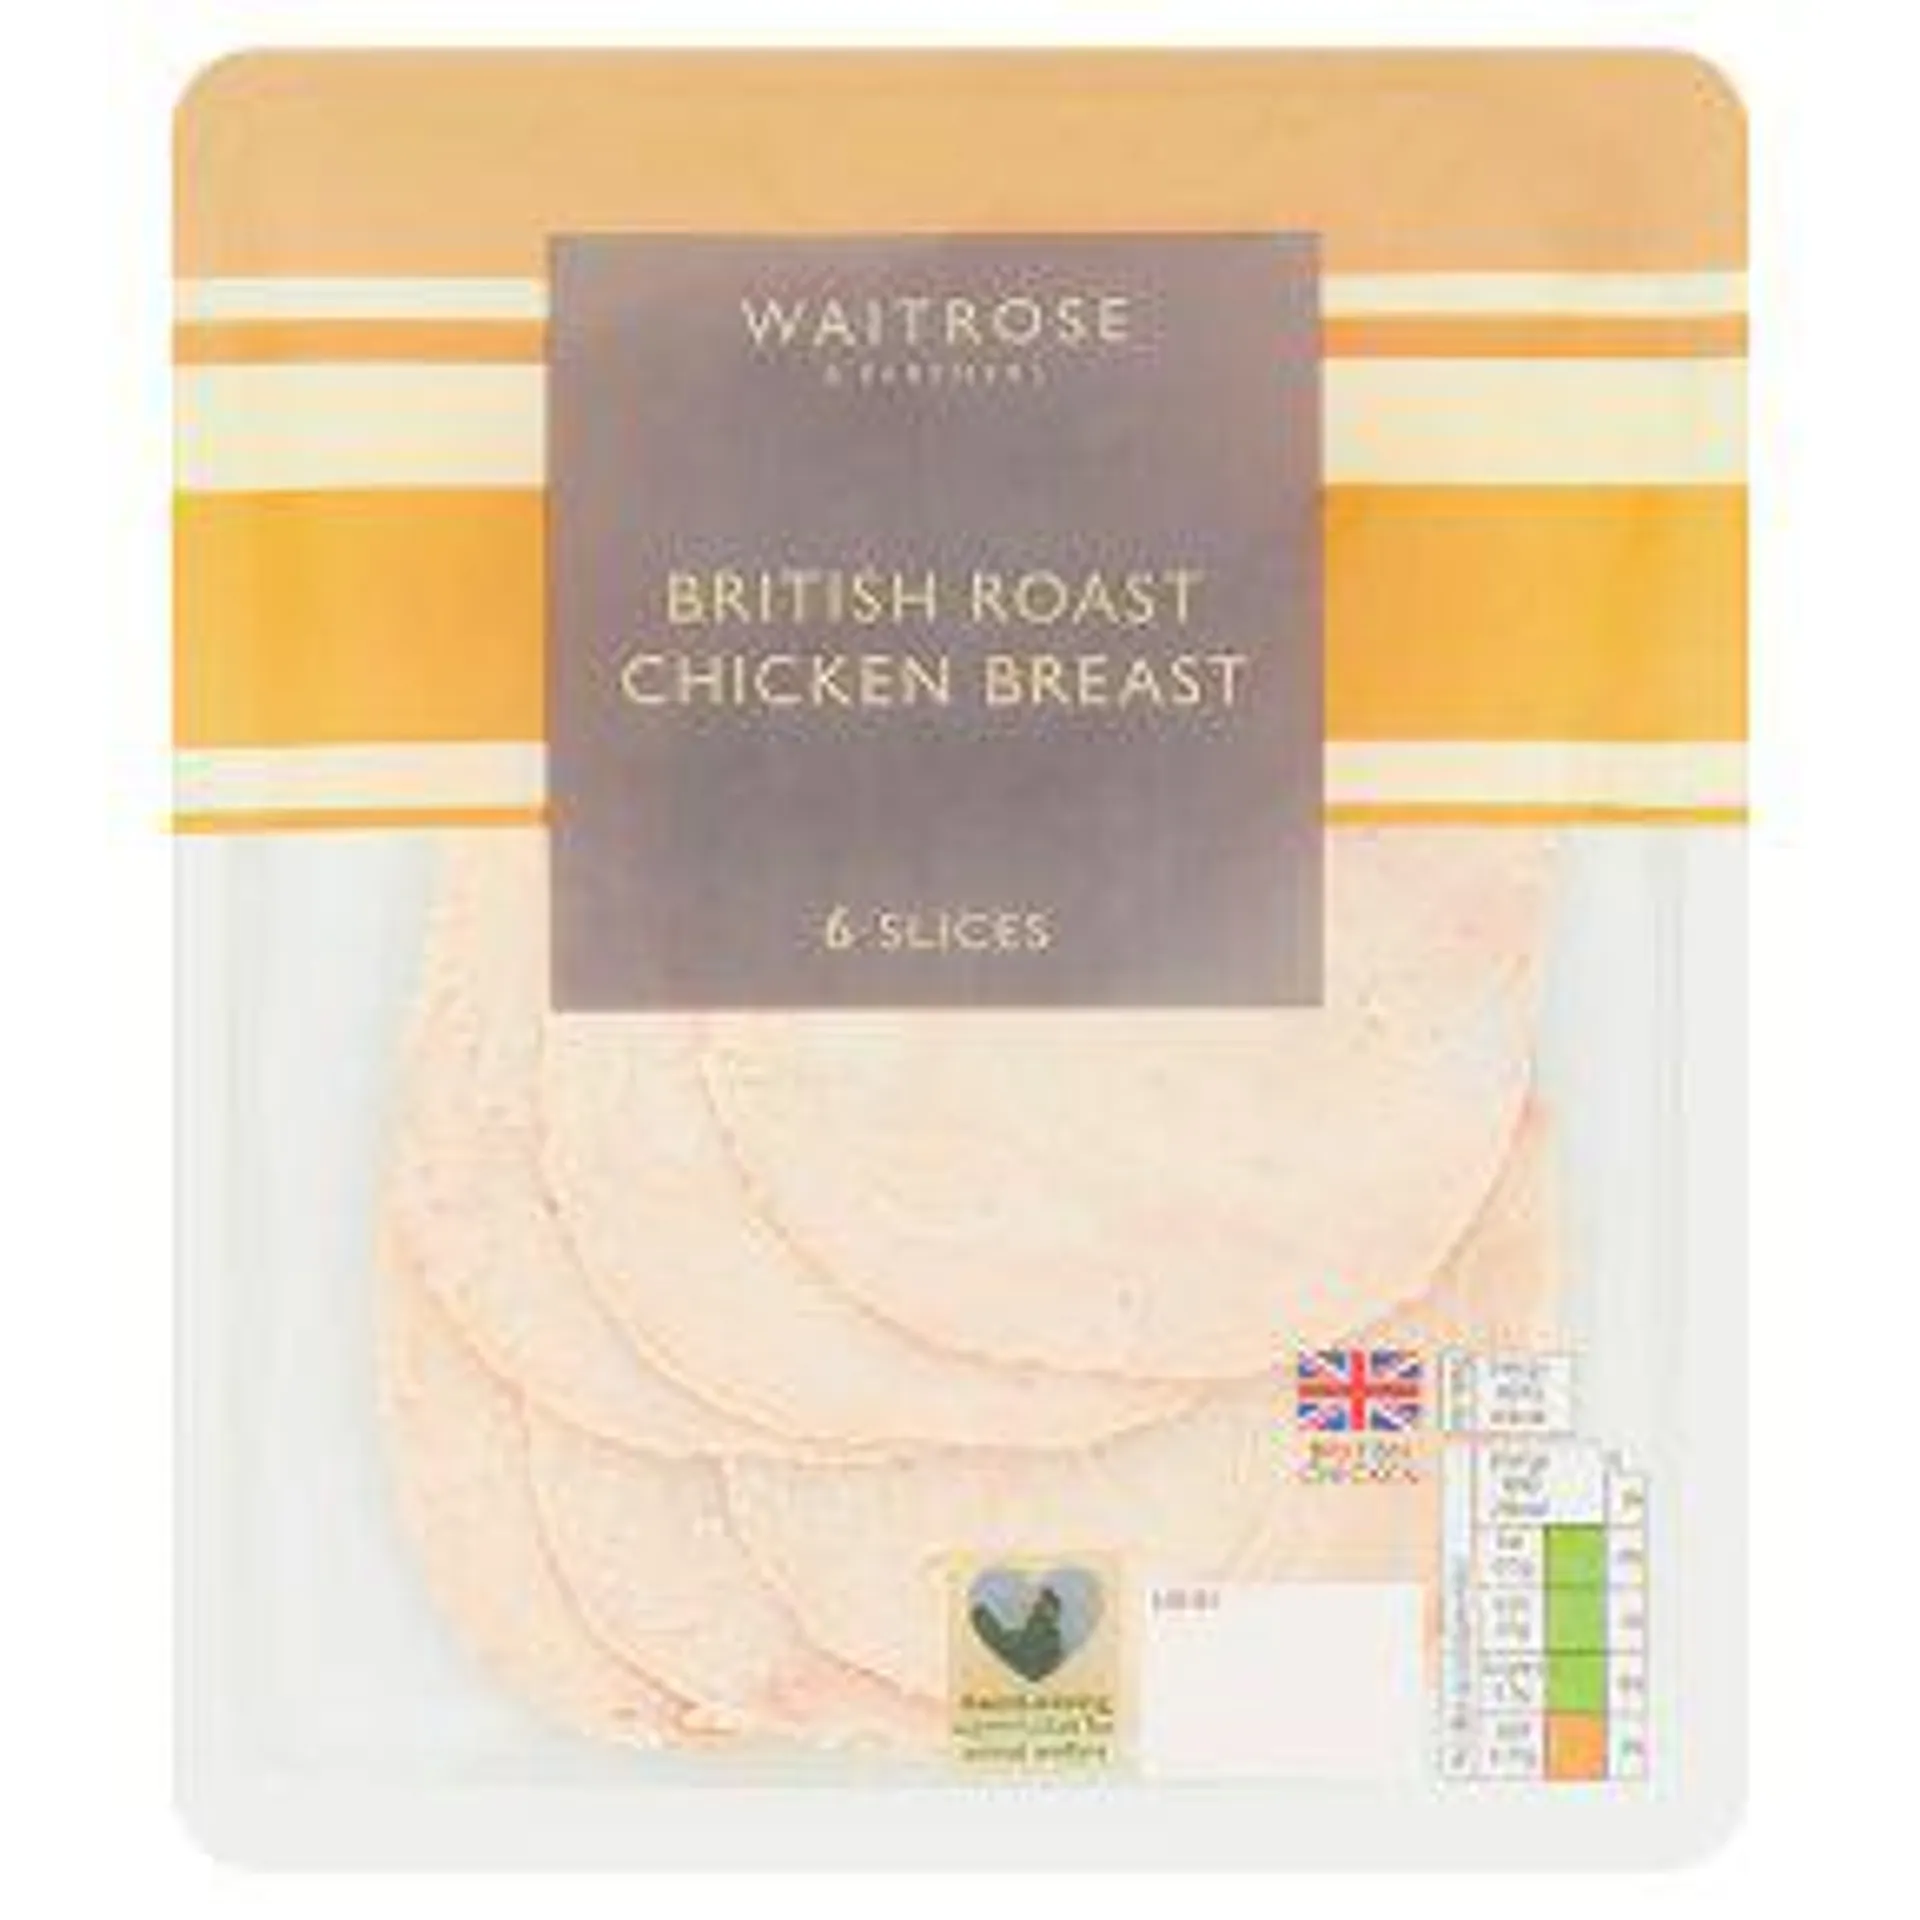 Waitrose British Roast Chicken Breast 6 Slices